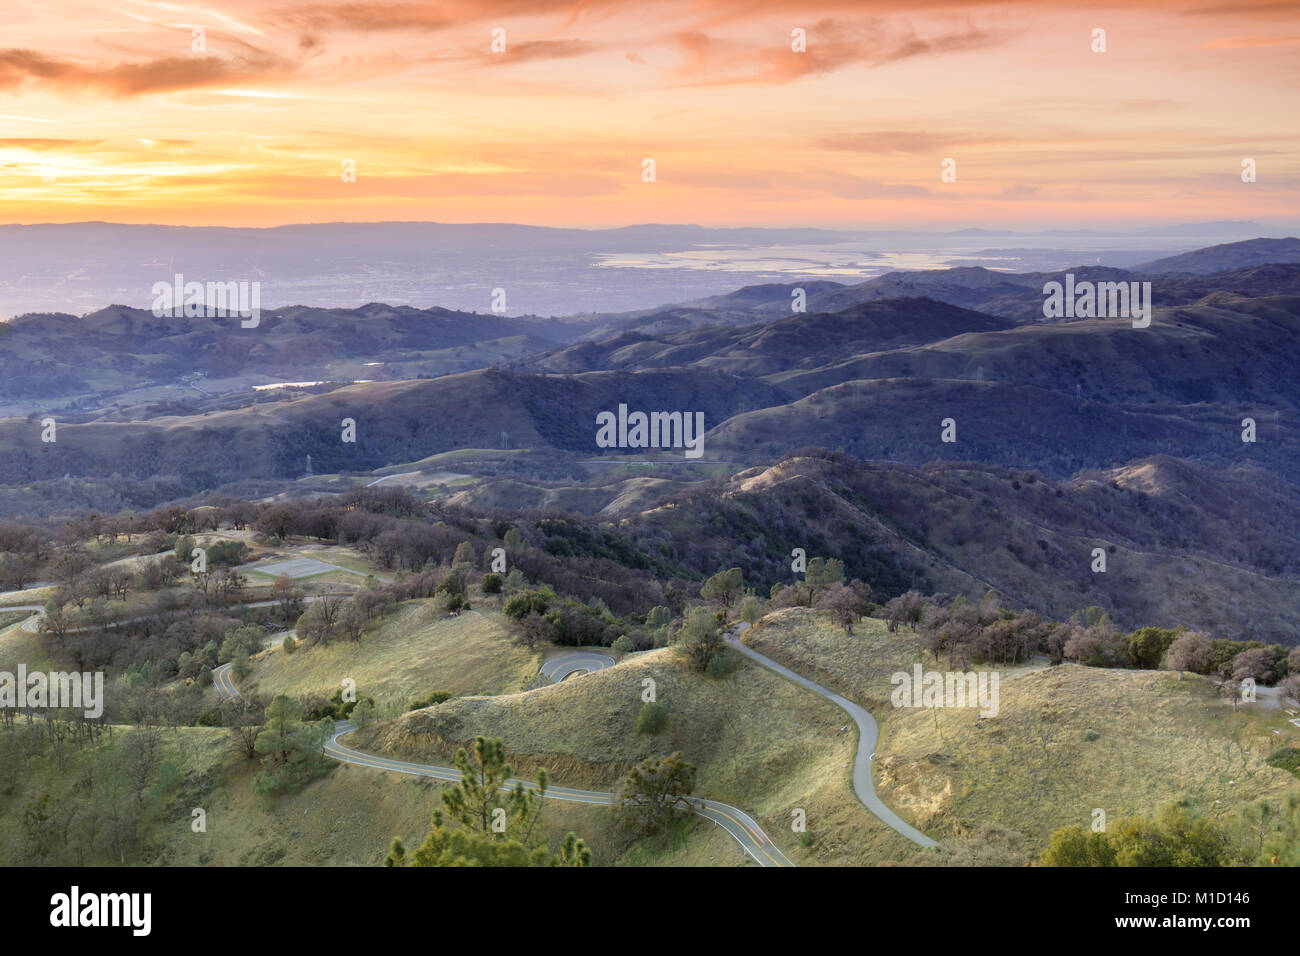 Mount Hamilton Foothills and Santa Clara Valley Sunset. Stock Photo